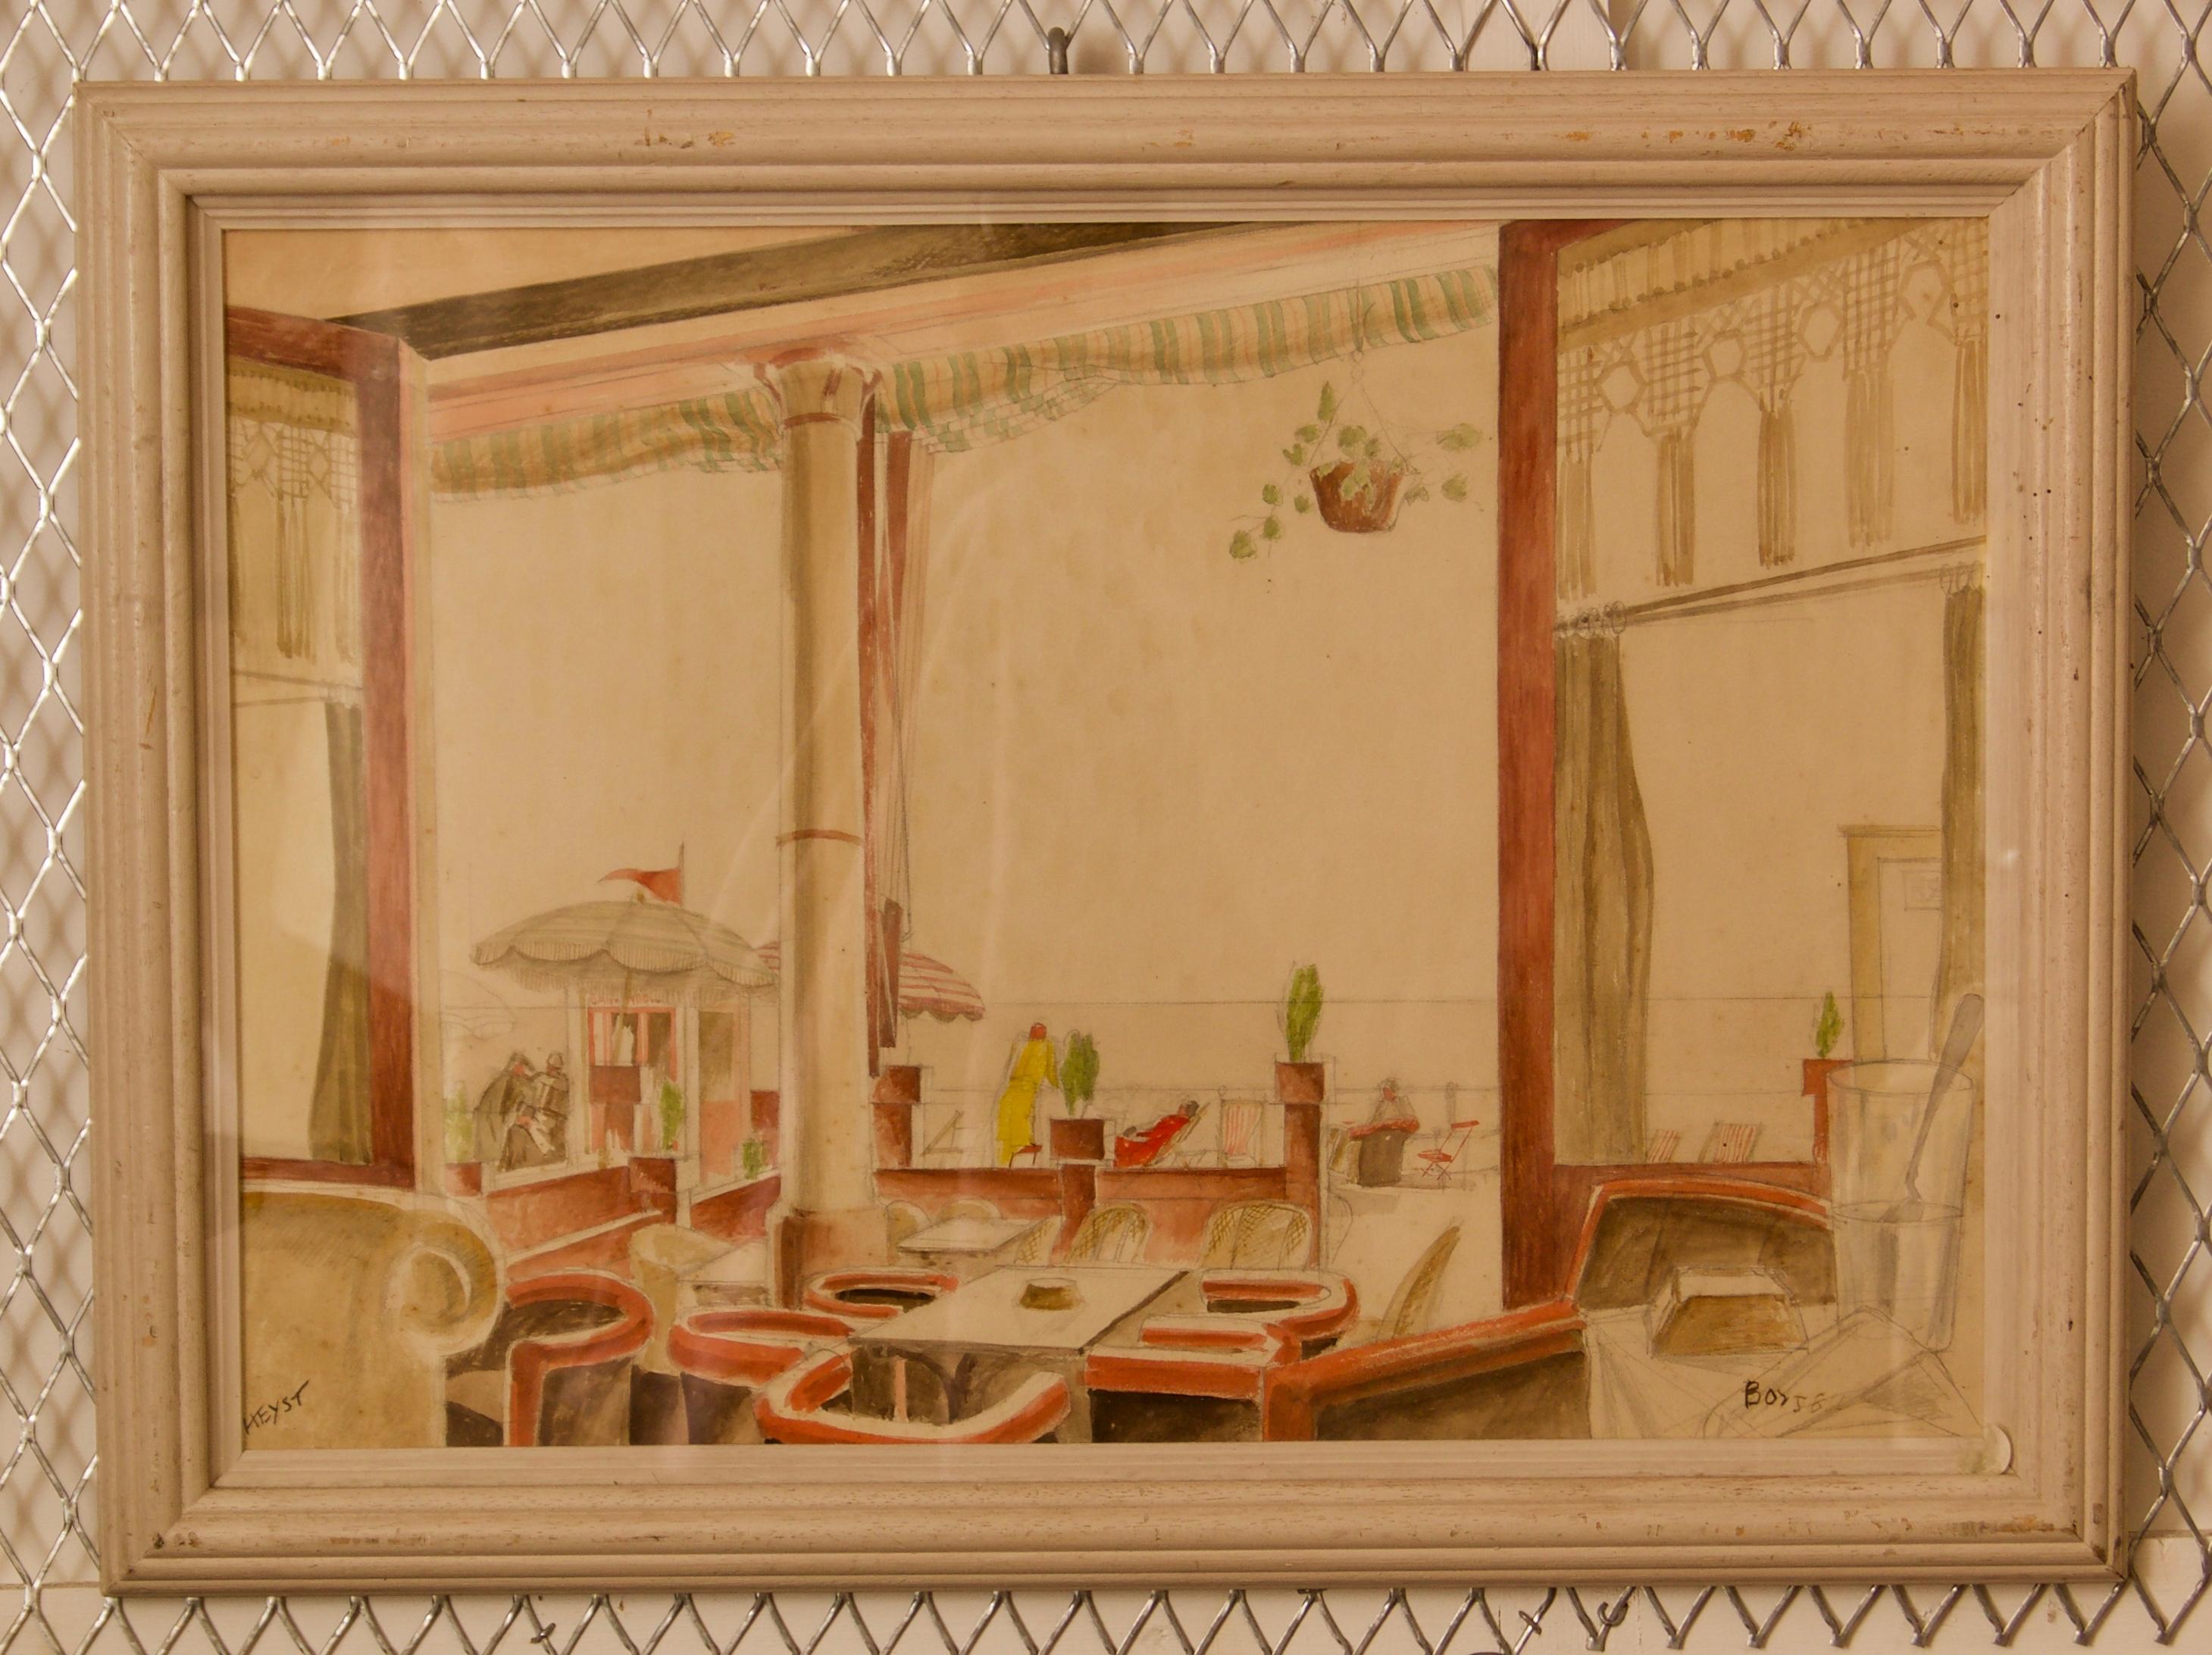 Howard Bowen est un artiste d'après-guerre et contemporain.

Cette œuvre a été réalisée à l'aquarelle et se trouve dans un cadre en bois sous verre.

Mots-clés : Art déco, intérieur, aquarelle, paysage, bâtiments, 1950s, 1958, restaurant, café,